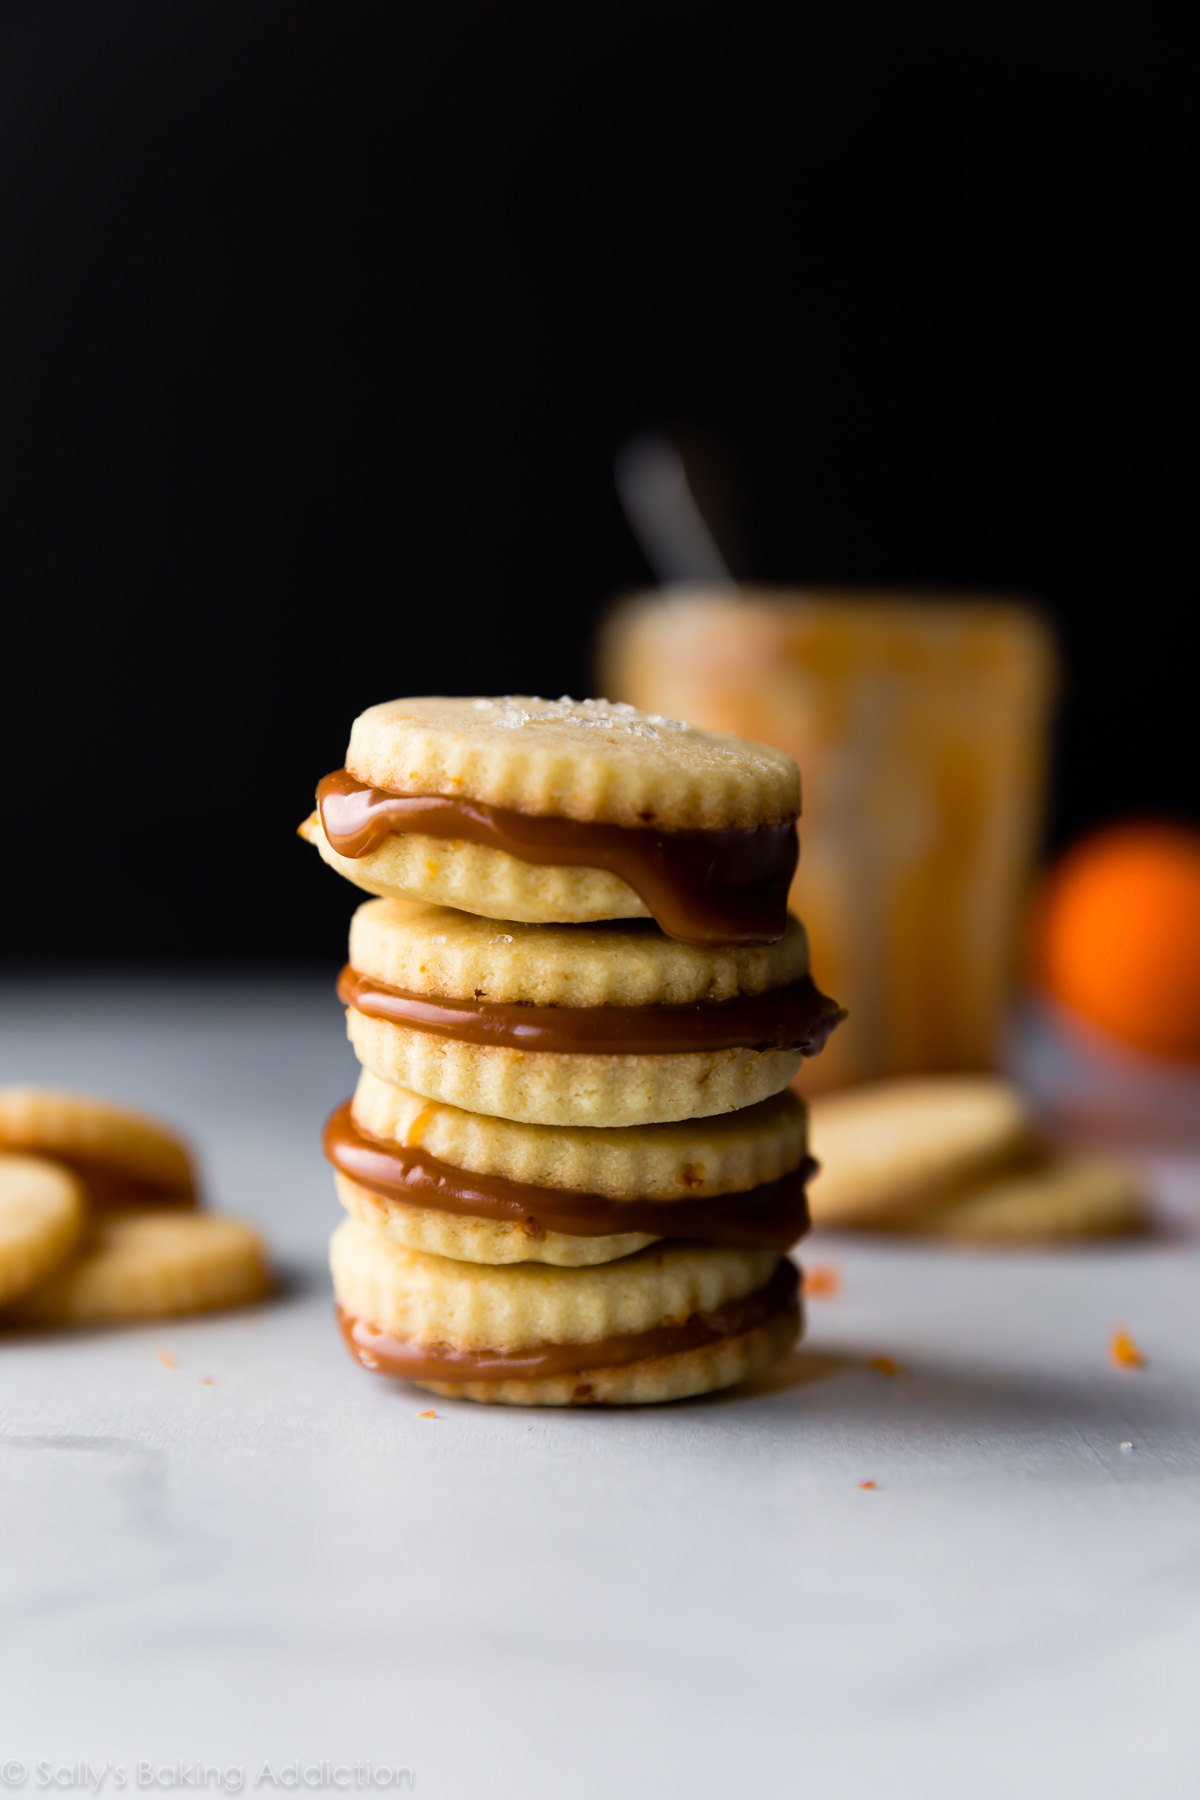 Mouchetés de zeste d'orange et fourrés au caramel, ces sandwichs aux biscuits sablés sont à la fois simples et sophistiqués! Recette sur sallysbakingaddiction.com